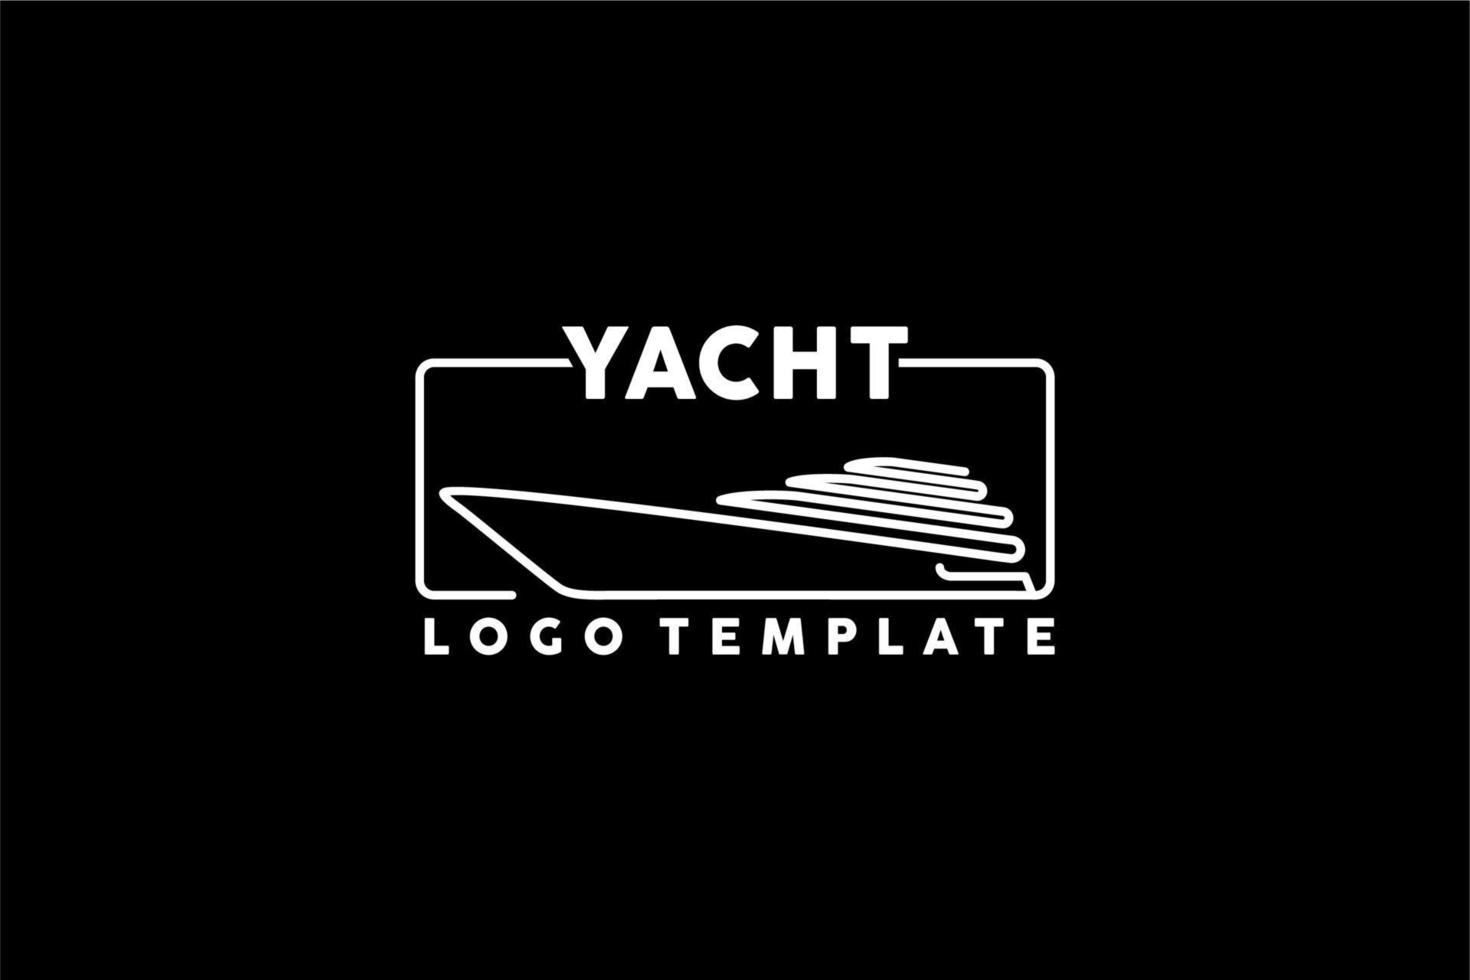 Yacht-Kreuzfahrt-Logo mit minimalistischem Linienkunststil vektor